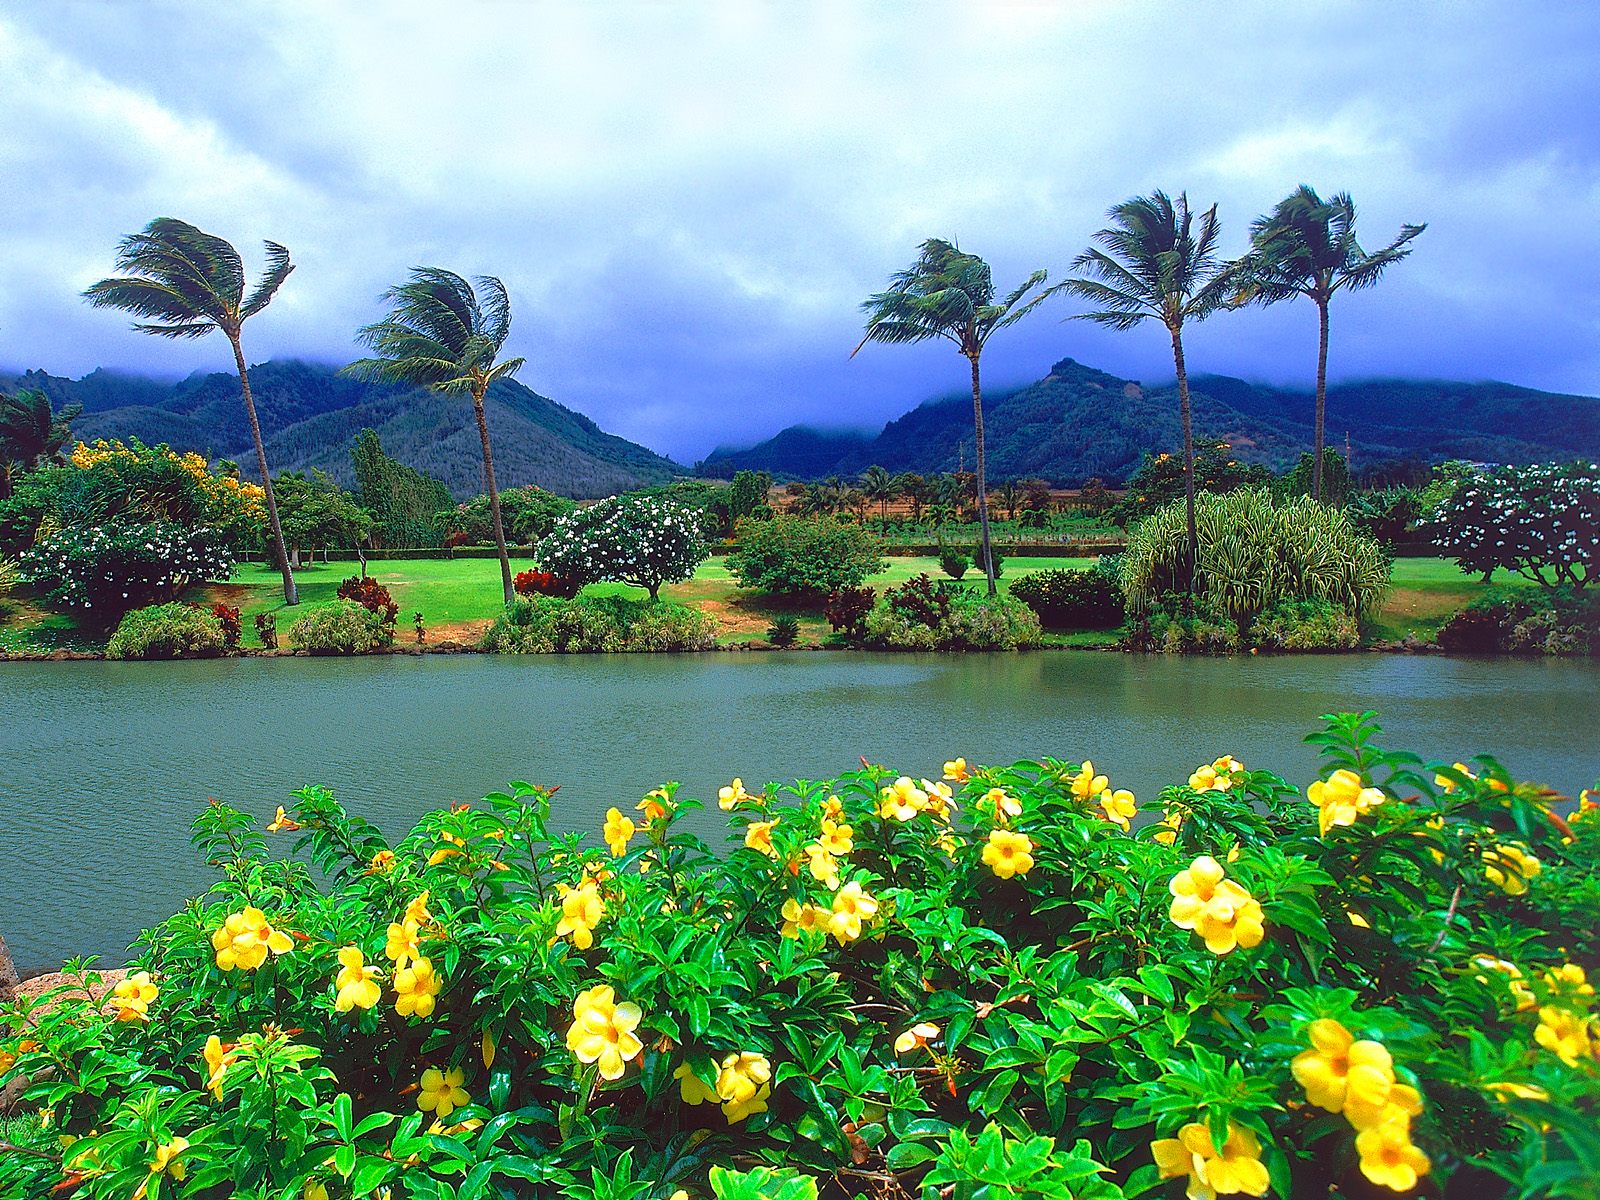 Maui Tropical Plantation, Hawaii.